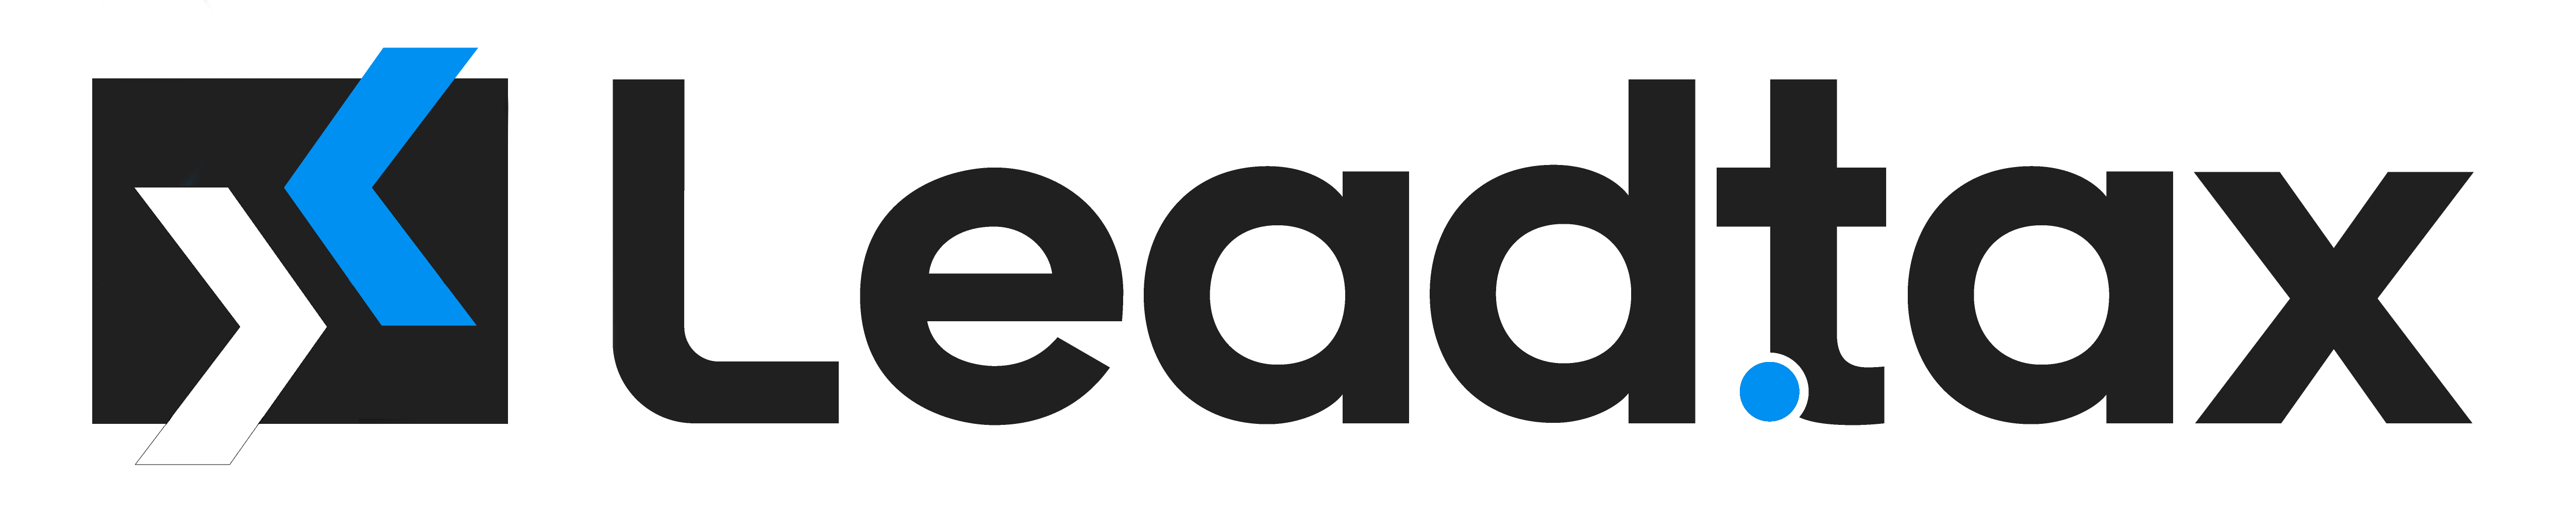 Leadtax